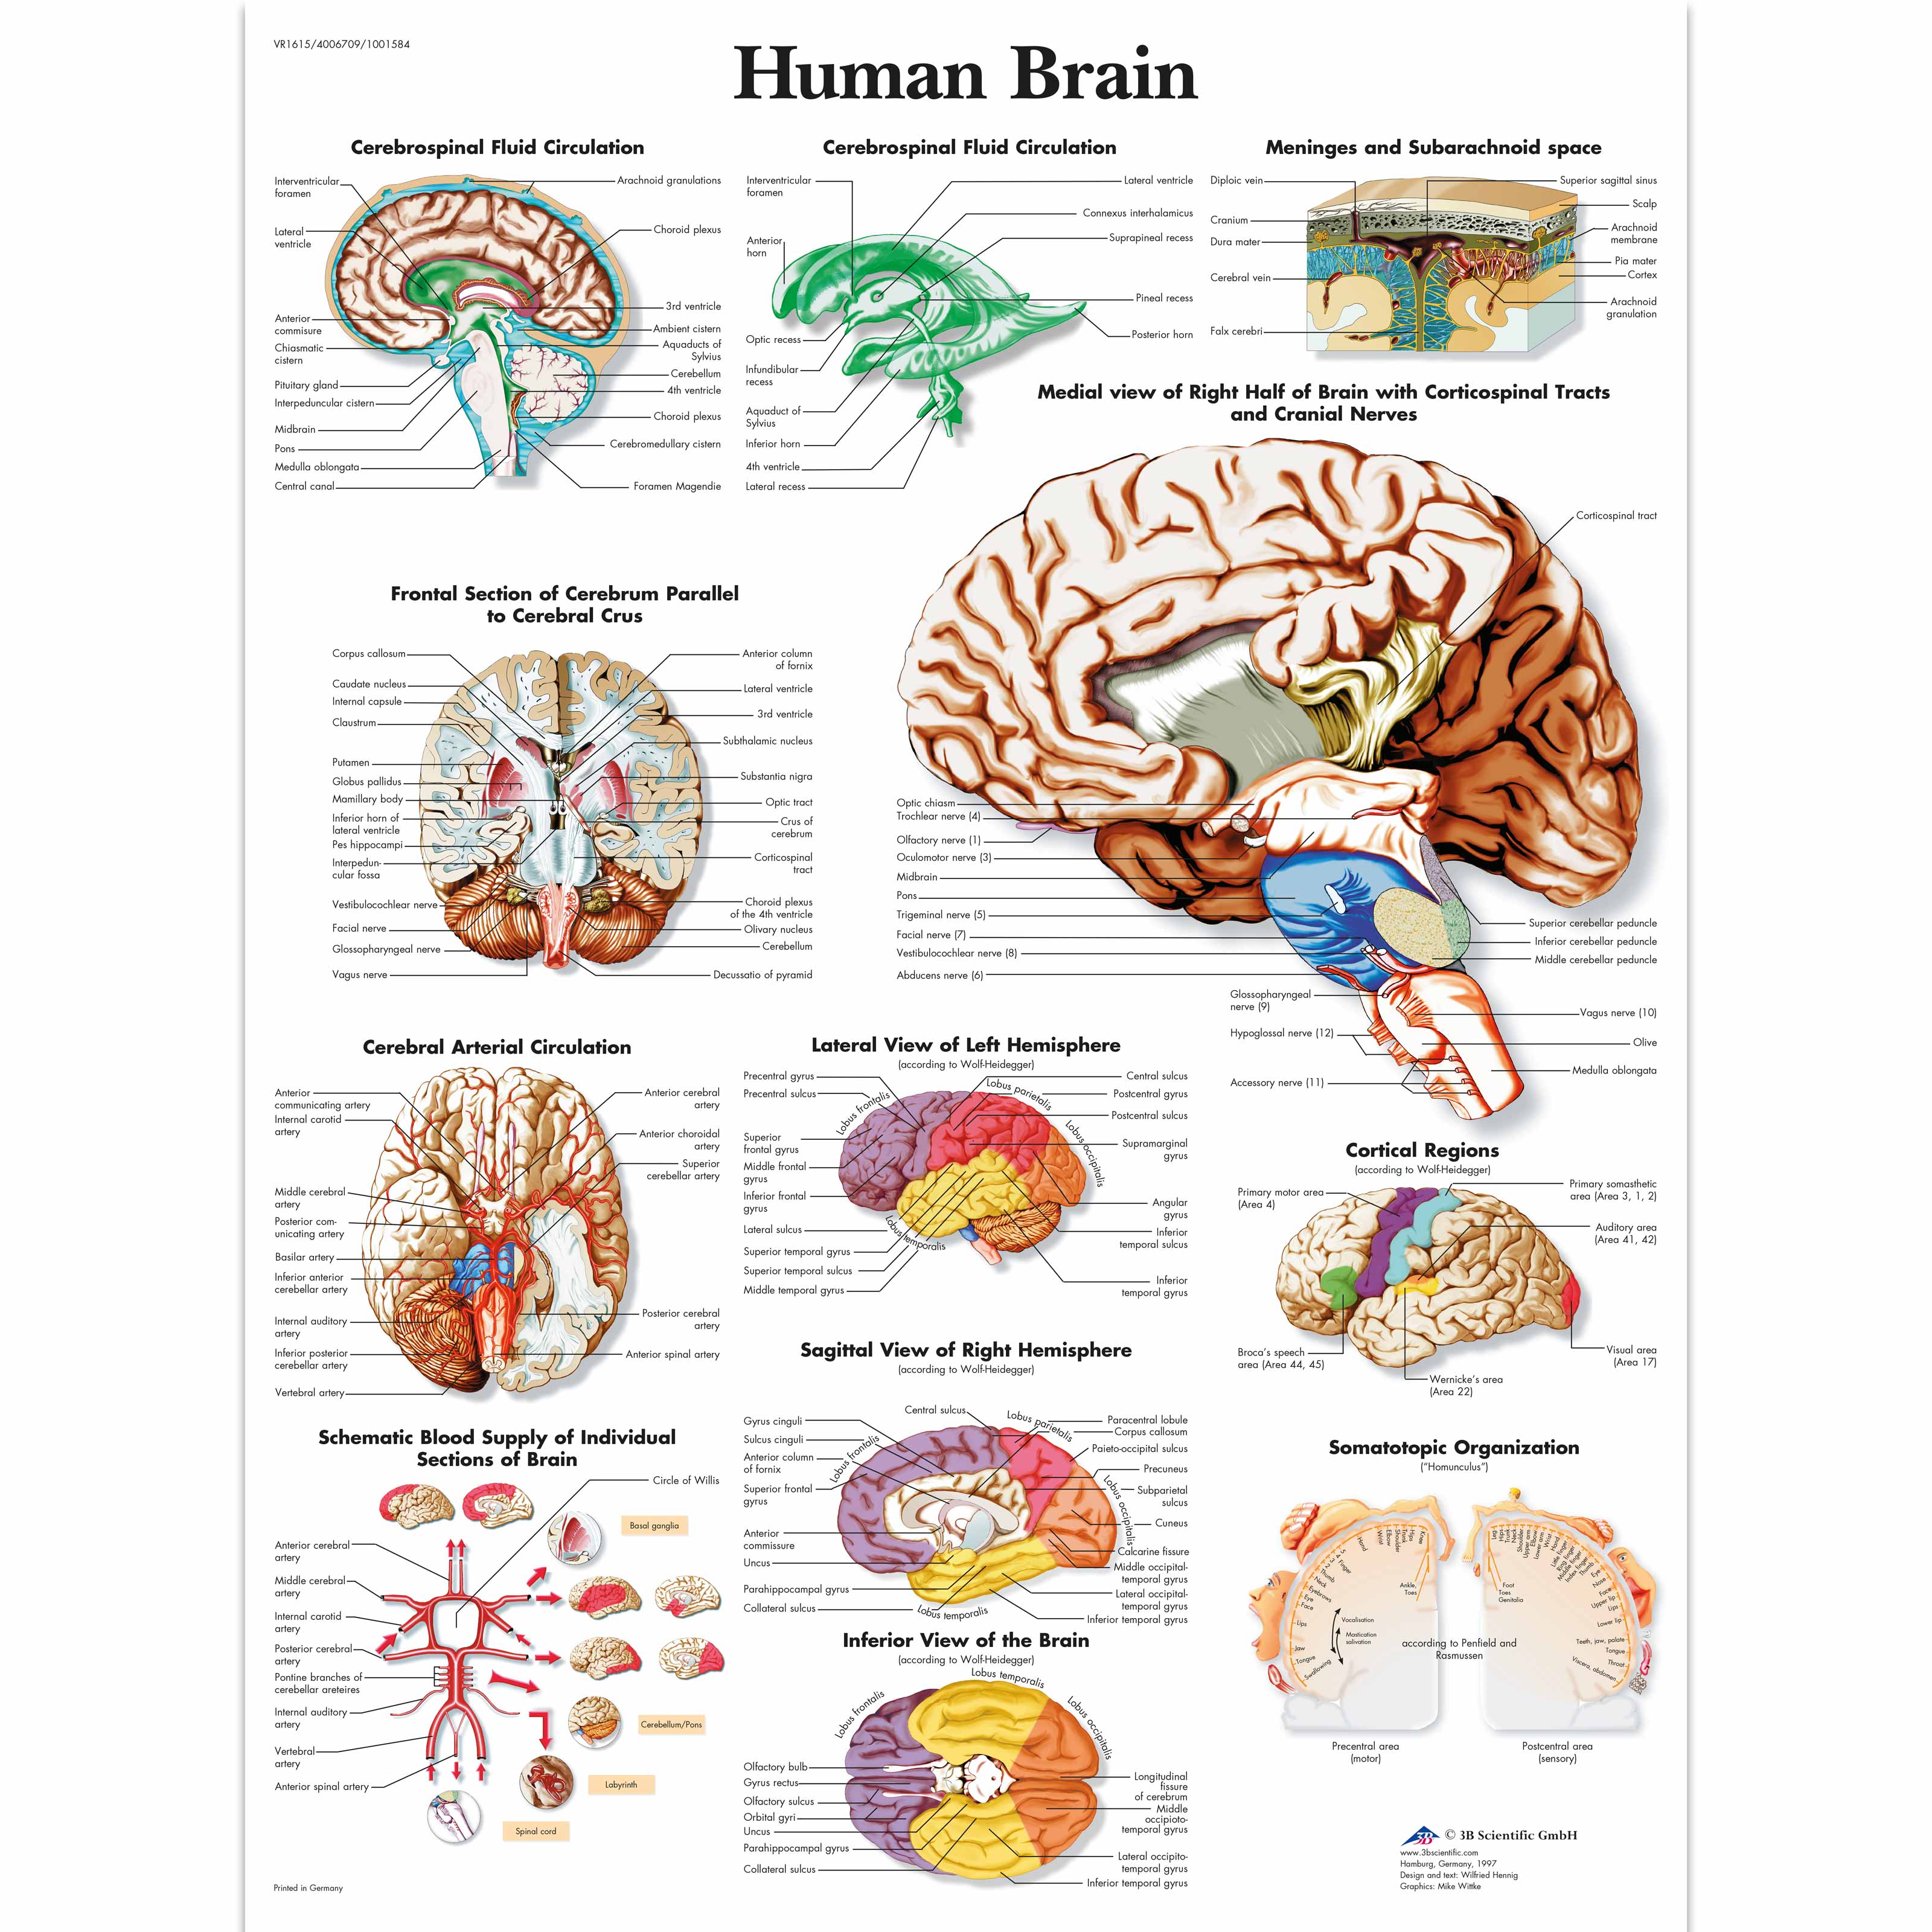 Human brain essay